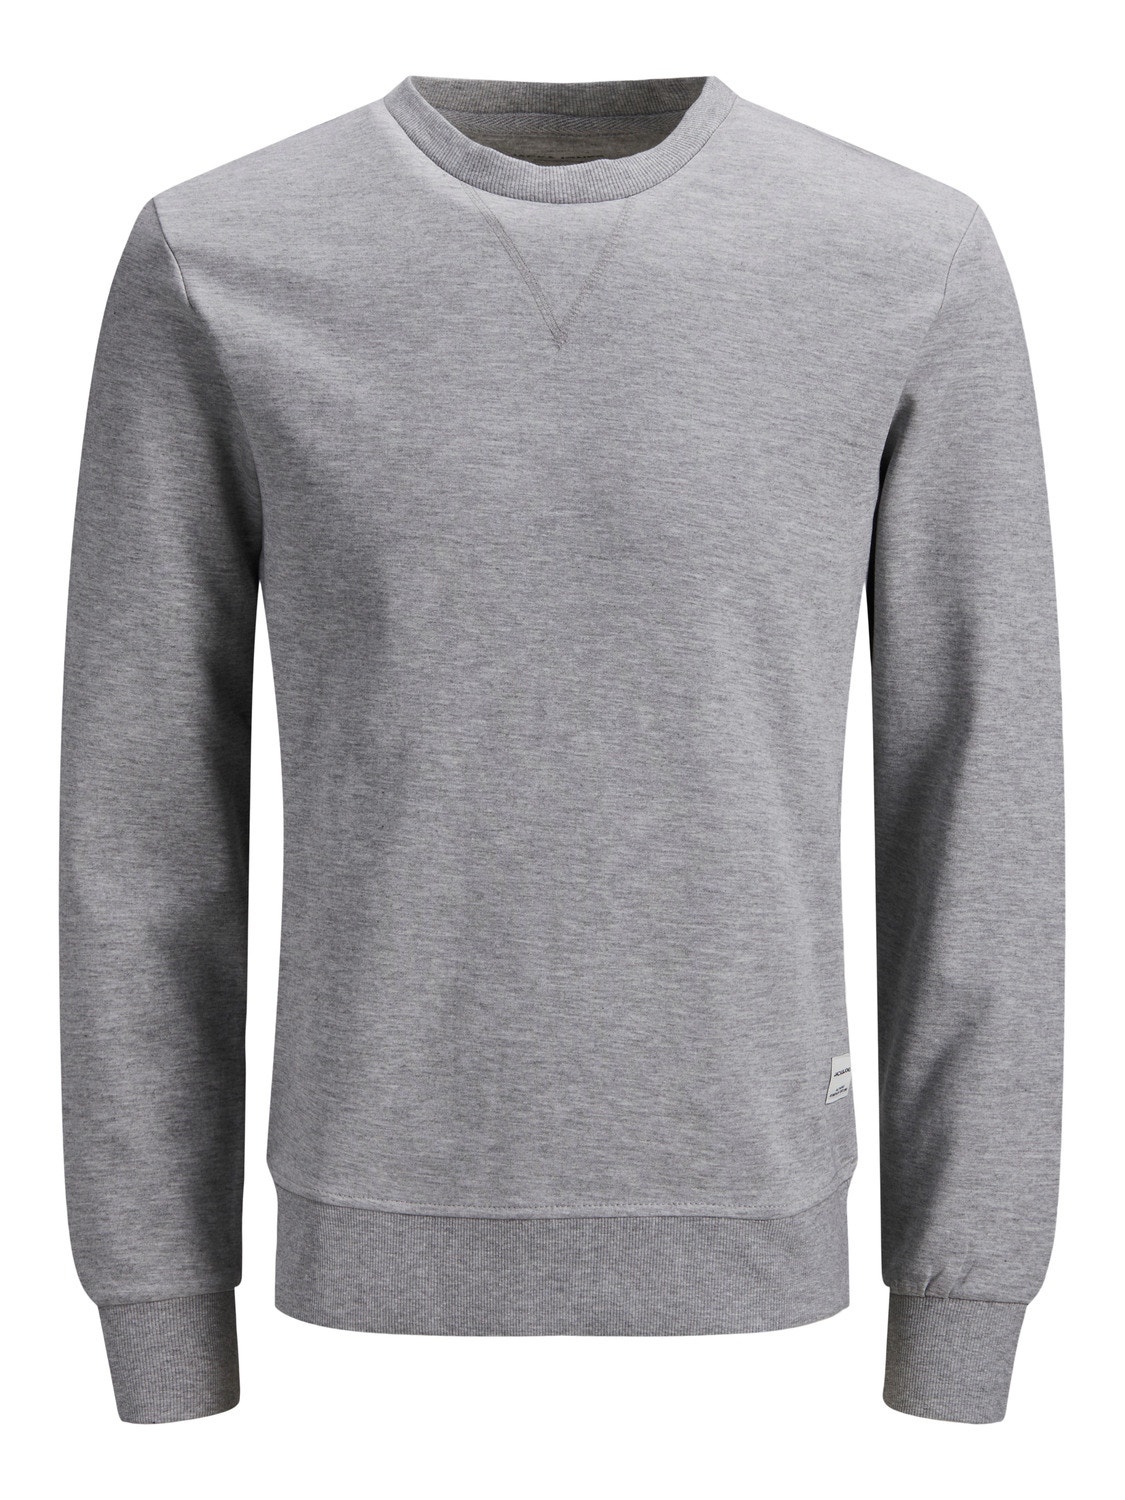 Jack & Jones Plus Size Einfarbig Sweatshirt mit Rundhals -Light Grey Melange - 12182567